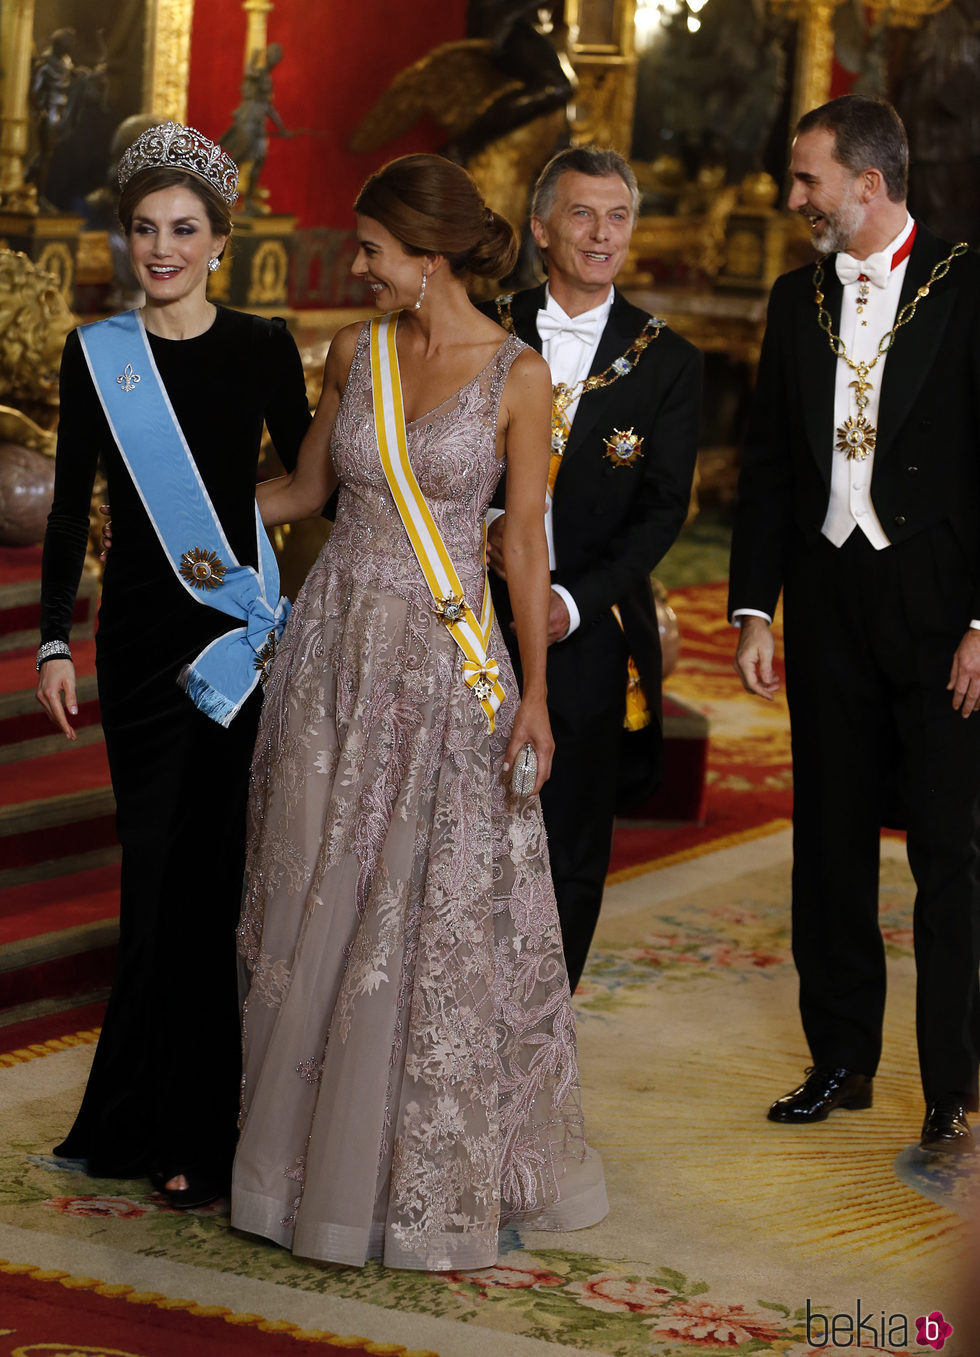 La Reina Letizia charla con Juliana Awada mientras el Rey Felipe lo hace con Mauricio Macri en la cena de gala en el Palacio Real